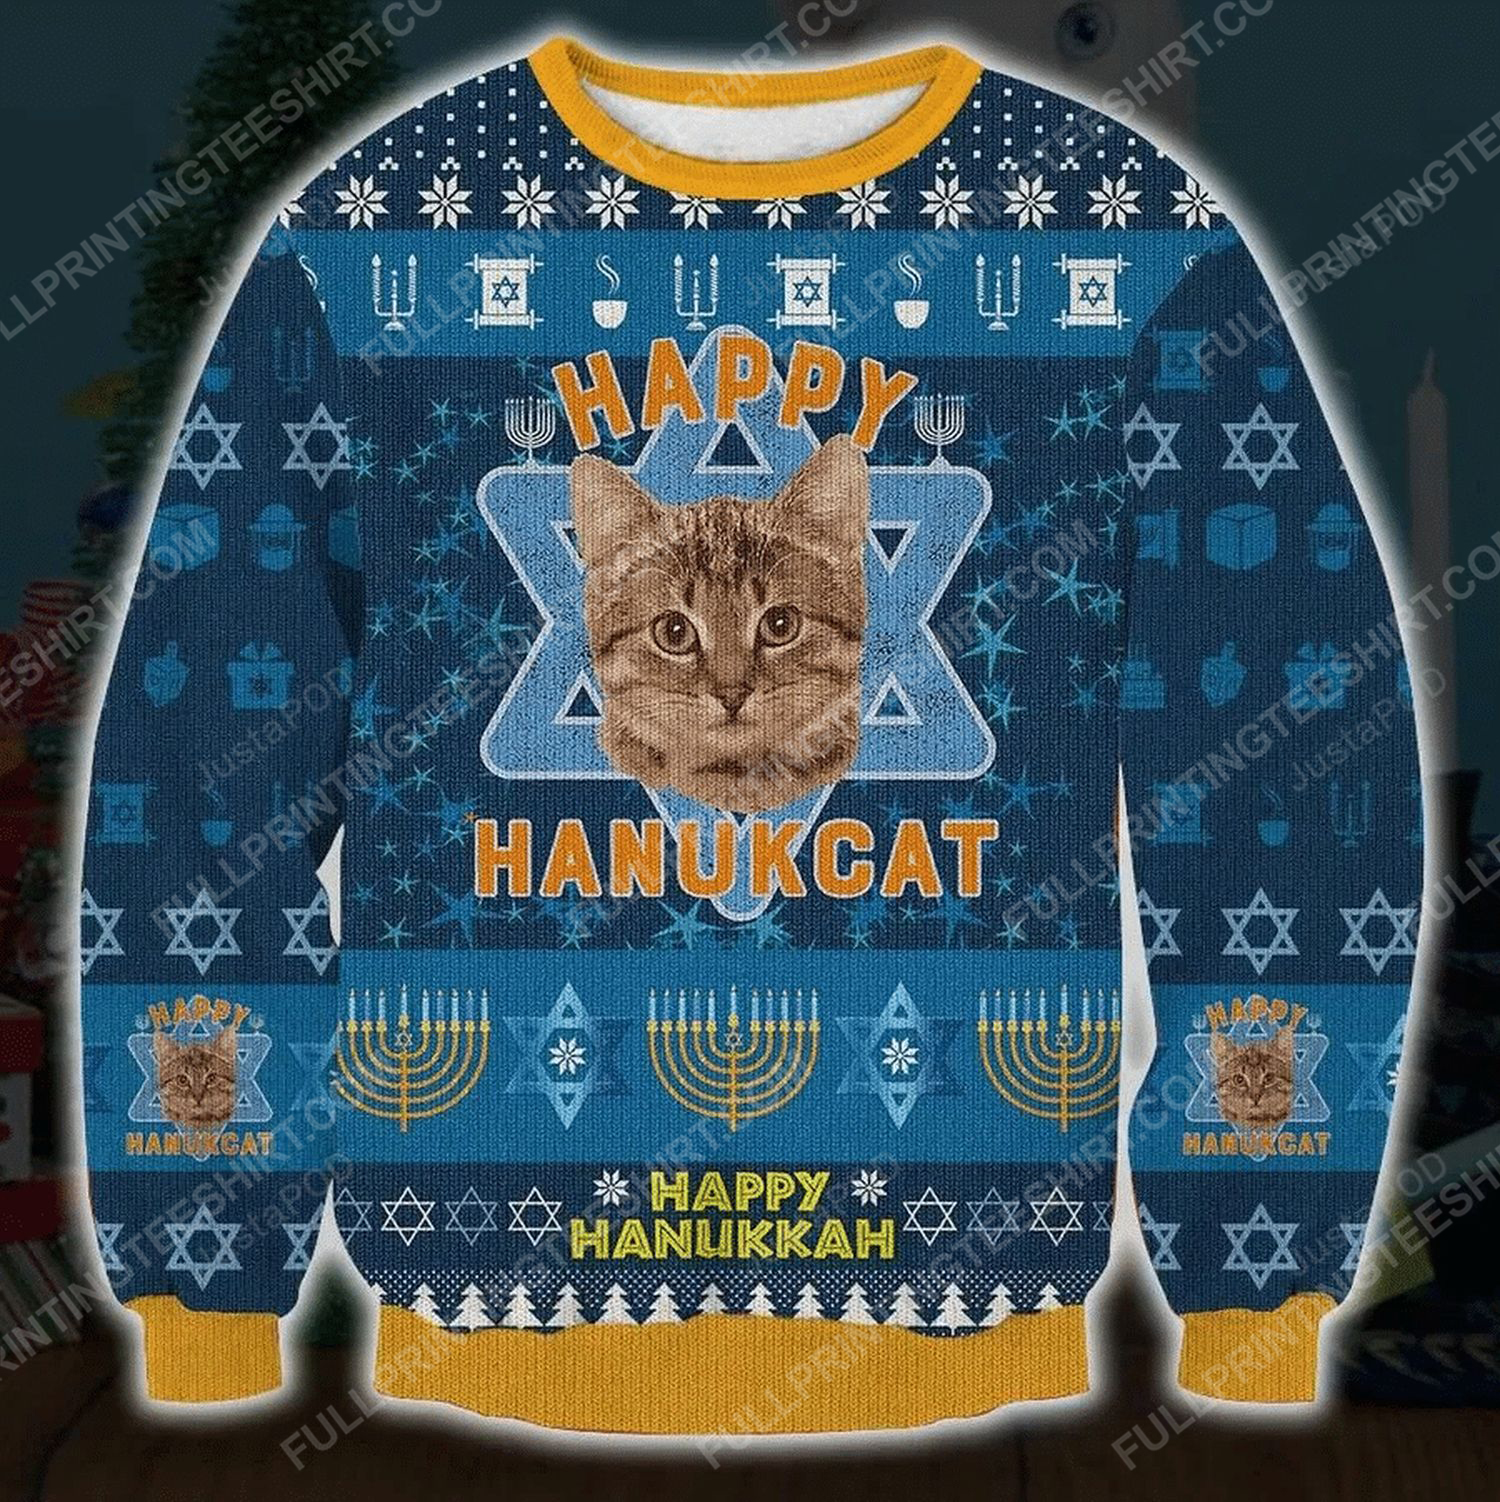 Happy hanukcat happy hanukkah ugly christmas sweater